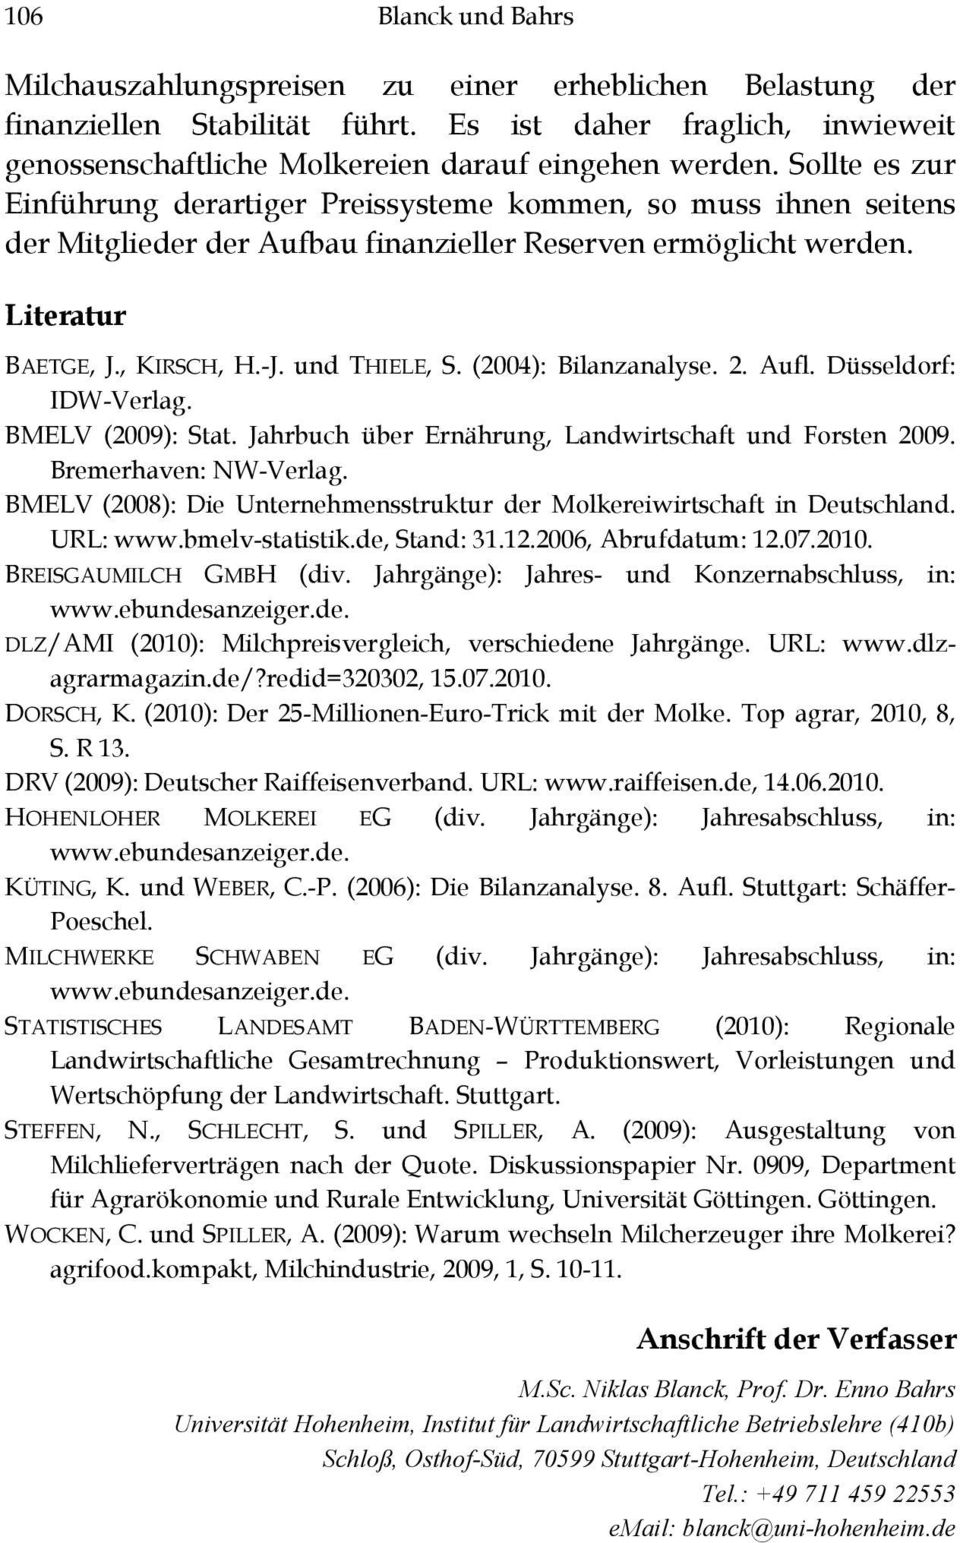 (2004): Bilanzanalyse. 2. Aufl. Düsseldorf: IDW-Verlag. BMELV (2009): Stat. Jahrbuch über Ernährung, Landwirtschaft und Forsten 2009. Bremerhaven: NW-Verlag.